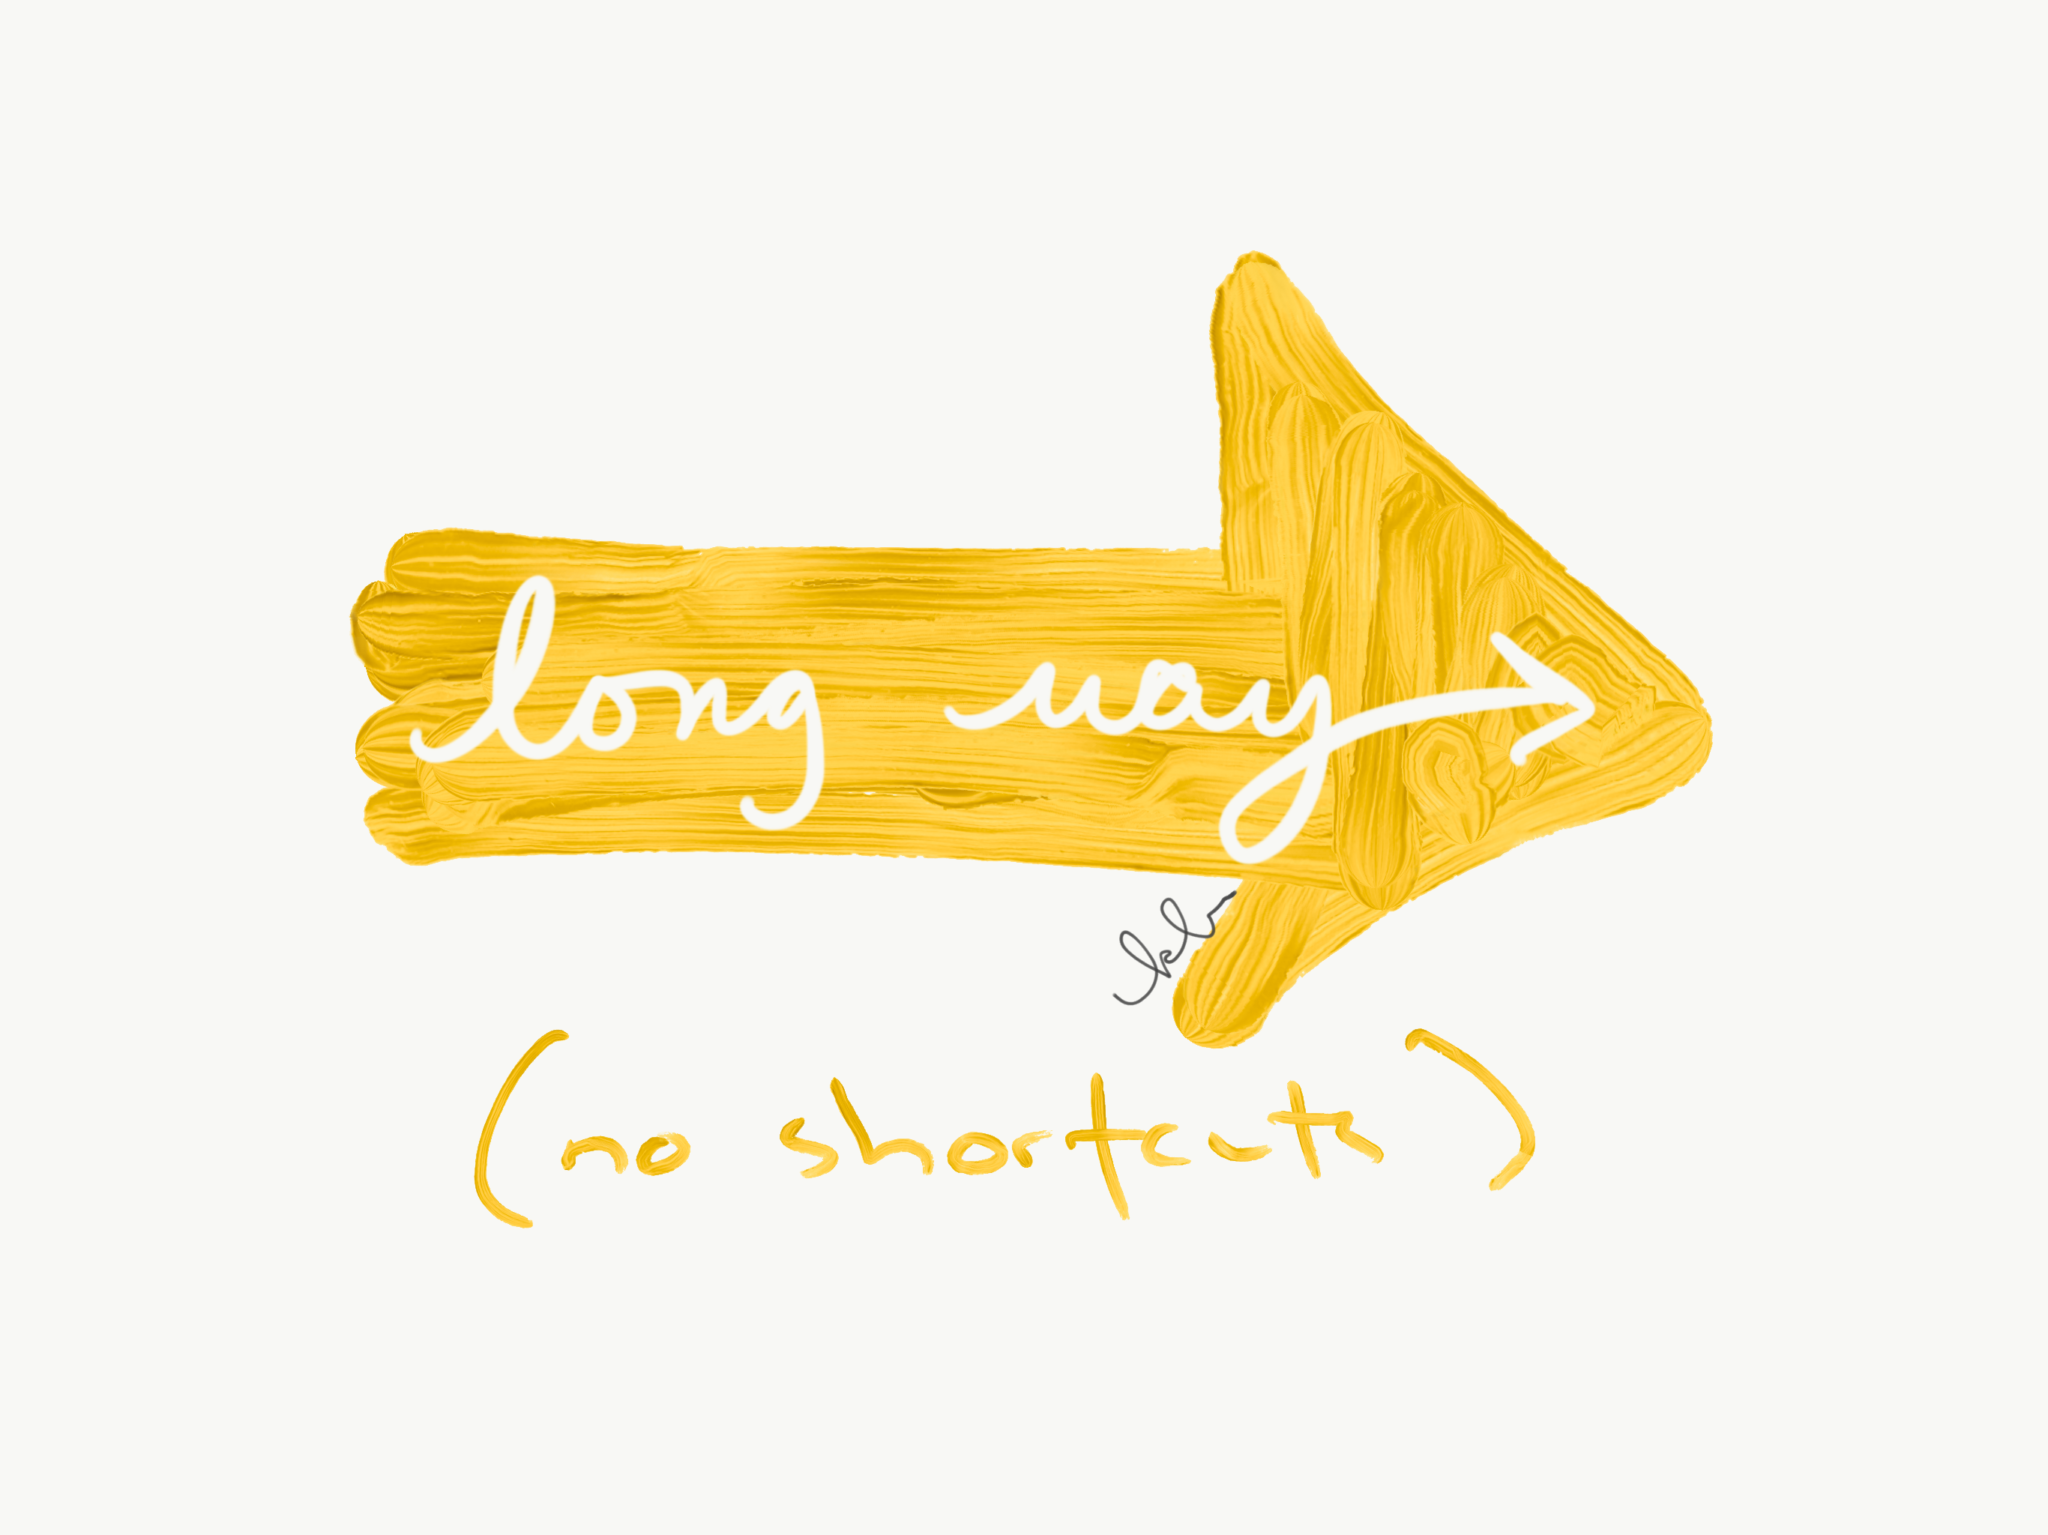 long way no shortcuts